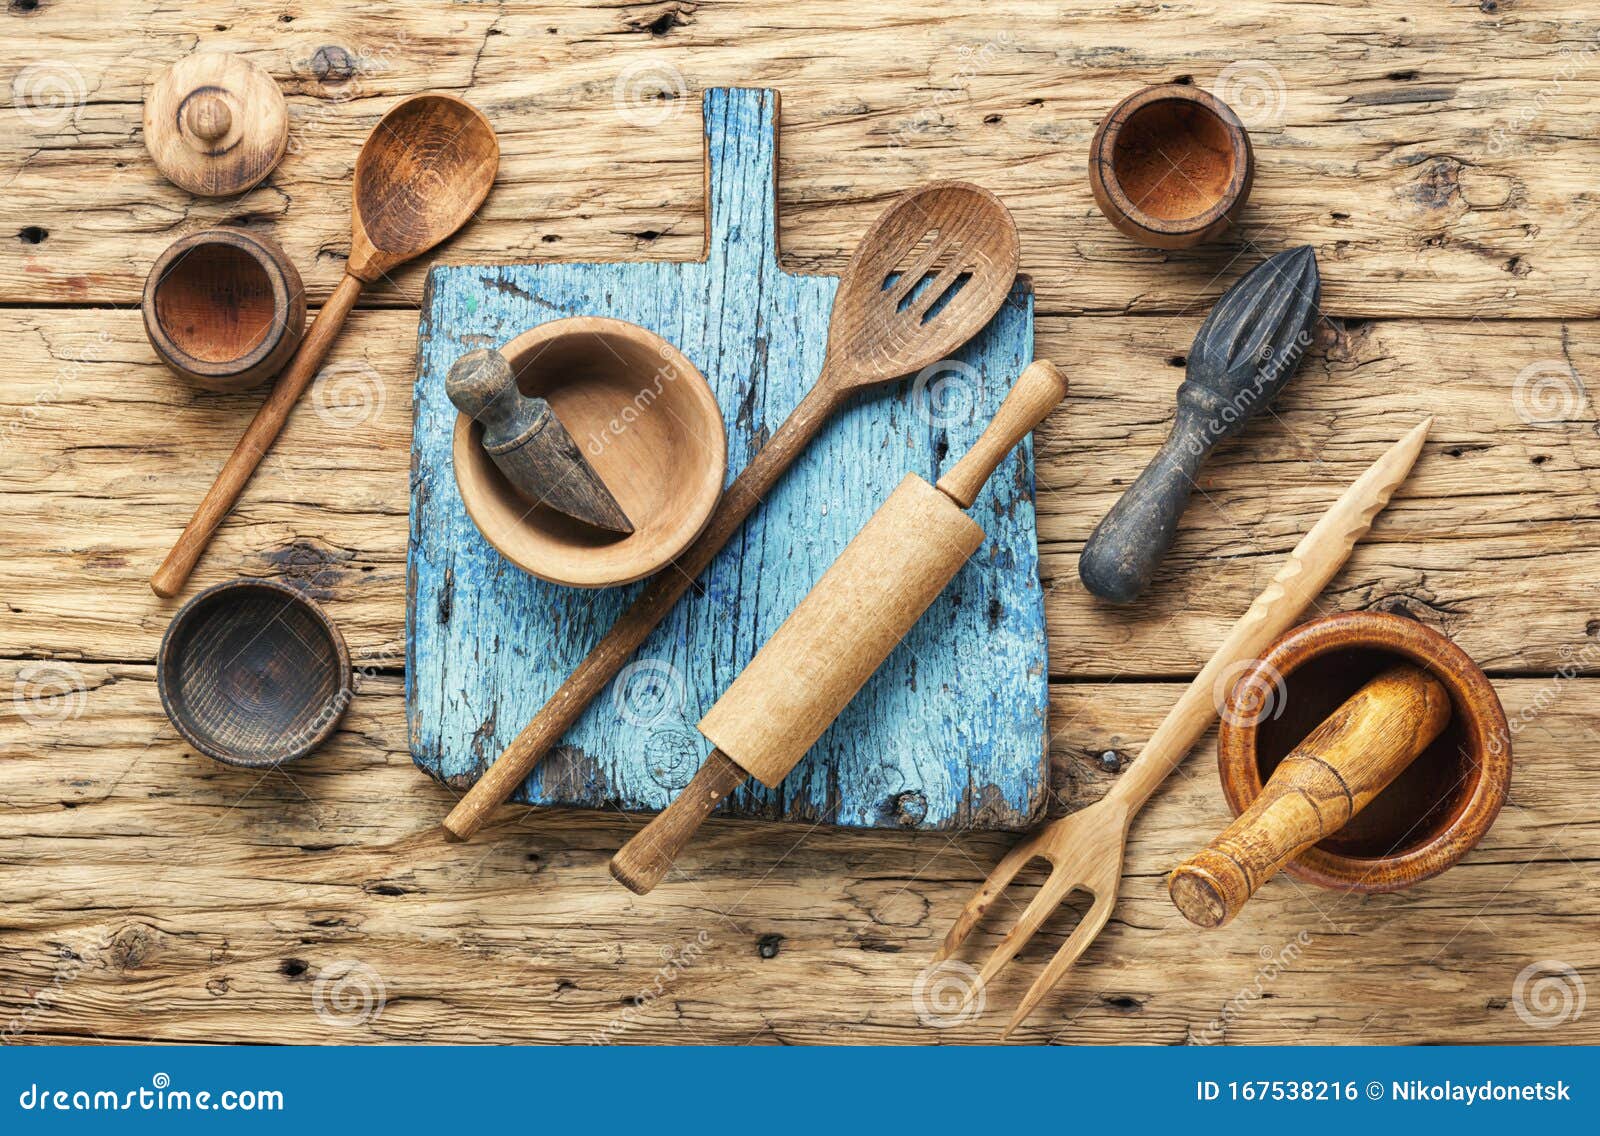 https://thumbs.dreamstime.com/z/conjunto-de-utensilios-cocina-madera-cubierta-%C3%A9poca-para-cocinar-sobre-un-fondo-r%C3%BAstico-cubiertos-167538216.jpg